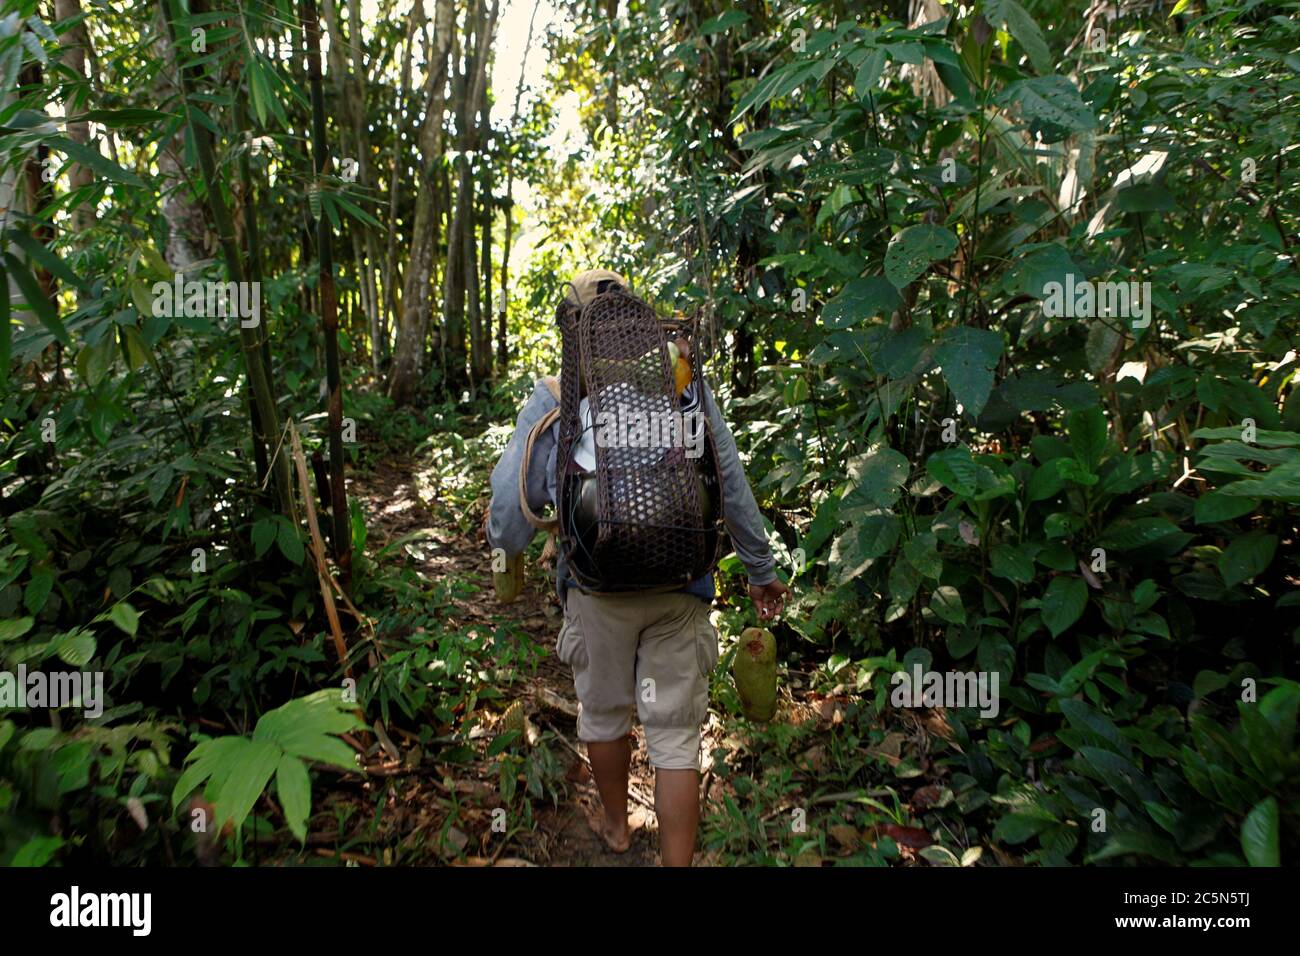 Eine Bäuerin der IBAN-Gemeinde, die durch einen Waldweg geht, nachdem sie auf einem landwirtschaftlichen Bauernhof in der Nähe des Dorfes Sungai Utik in Kapuas Hulu, West Kalimantan, Indonesien, gearbeitet hat. Stockfoto